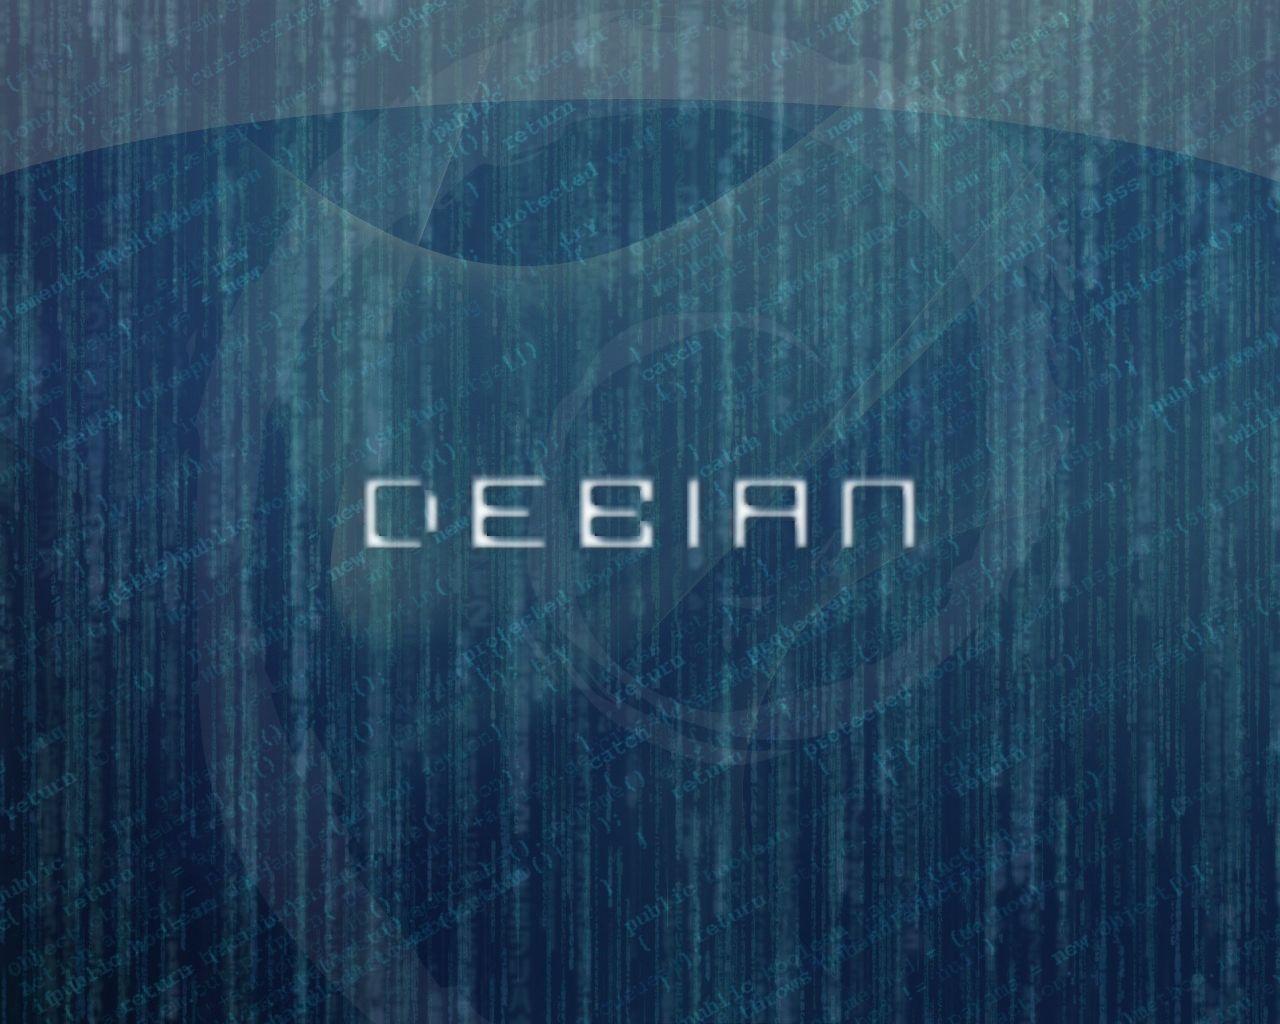 Debian Wallpaper, Linux Debian Fresh New HD Wallpaper Best